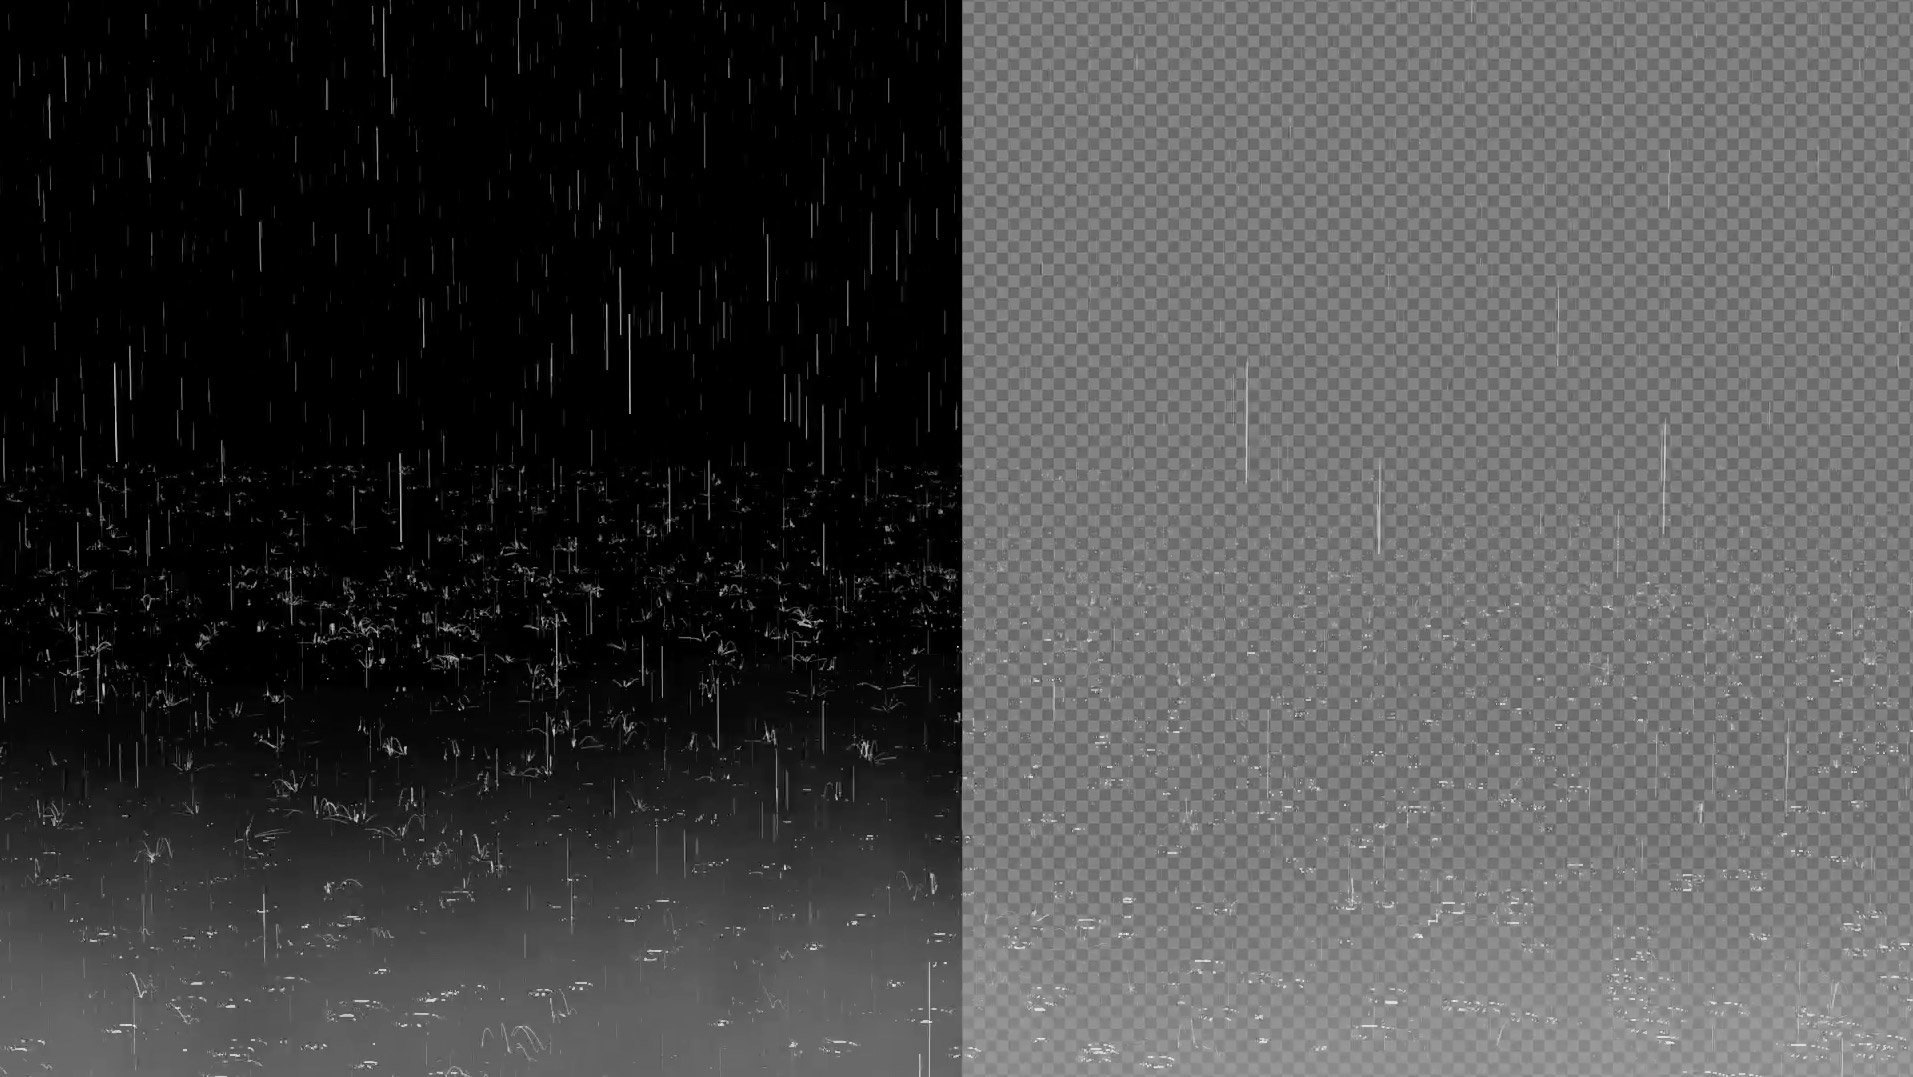 Rain effect. Эффект дождя для фотошопа. Дождь на прозрачном фоне. Текстура дождя. Текстура дождя для фотошопа.